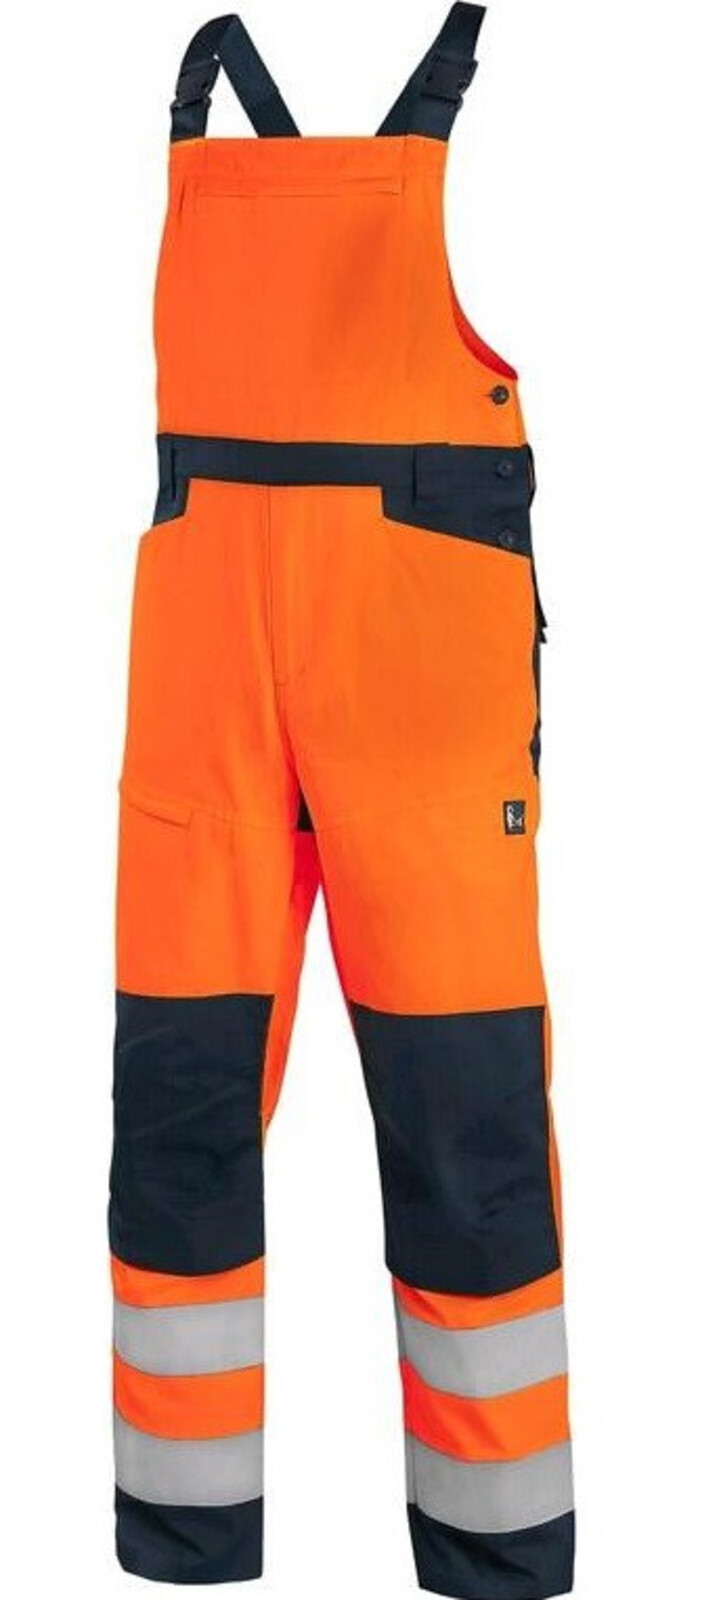 Pánske letné reflexné nohavice na traky CXS Halifax - veľkosť: 50, farba: oranžová/navy